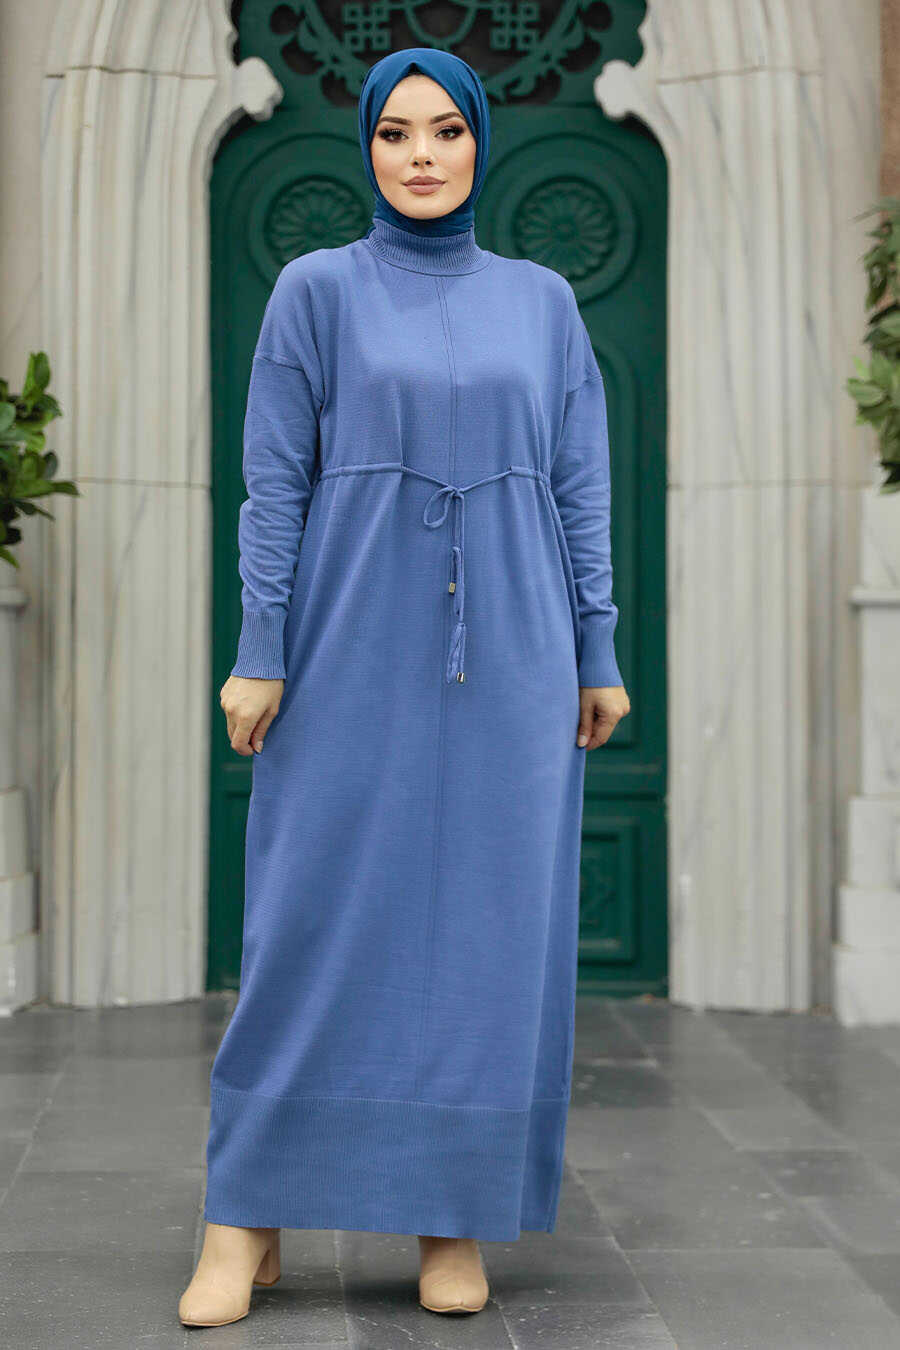 Neva Style - İndigo Blue Hijab Mercerized Dress 10158IM